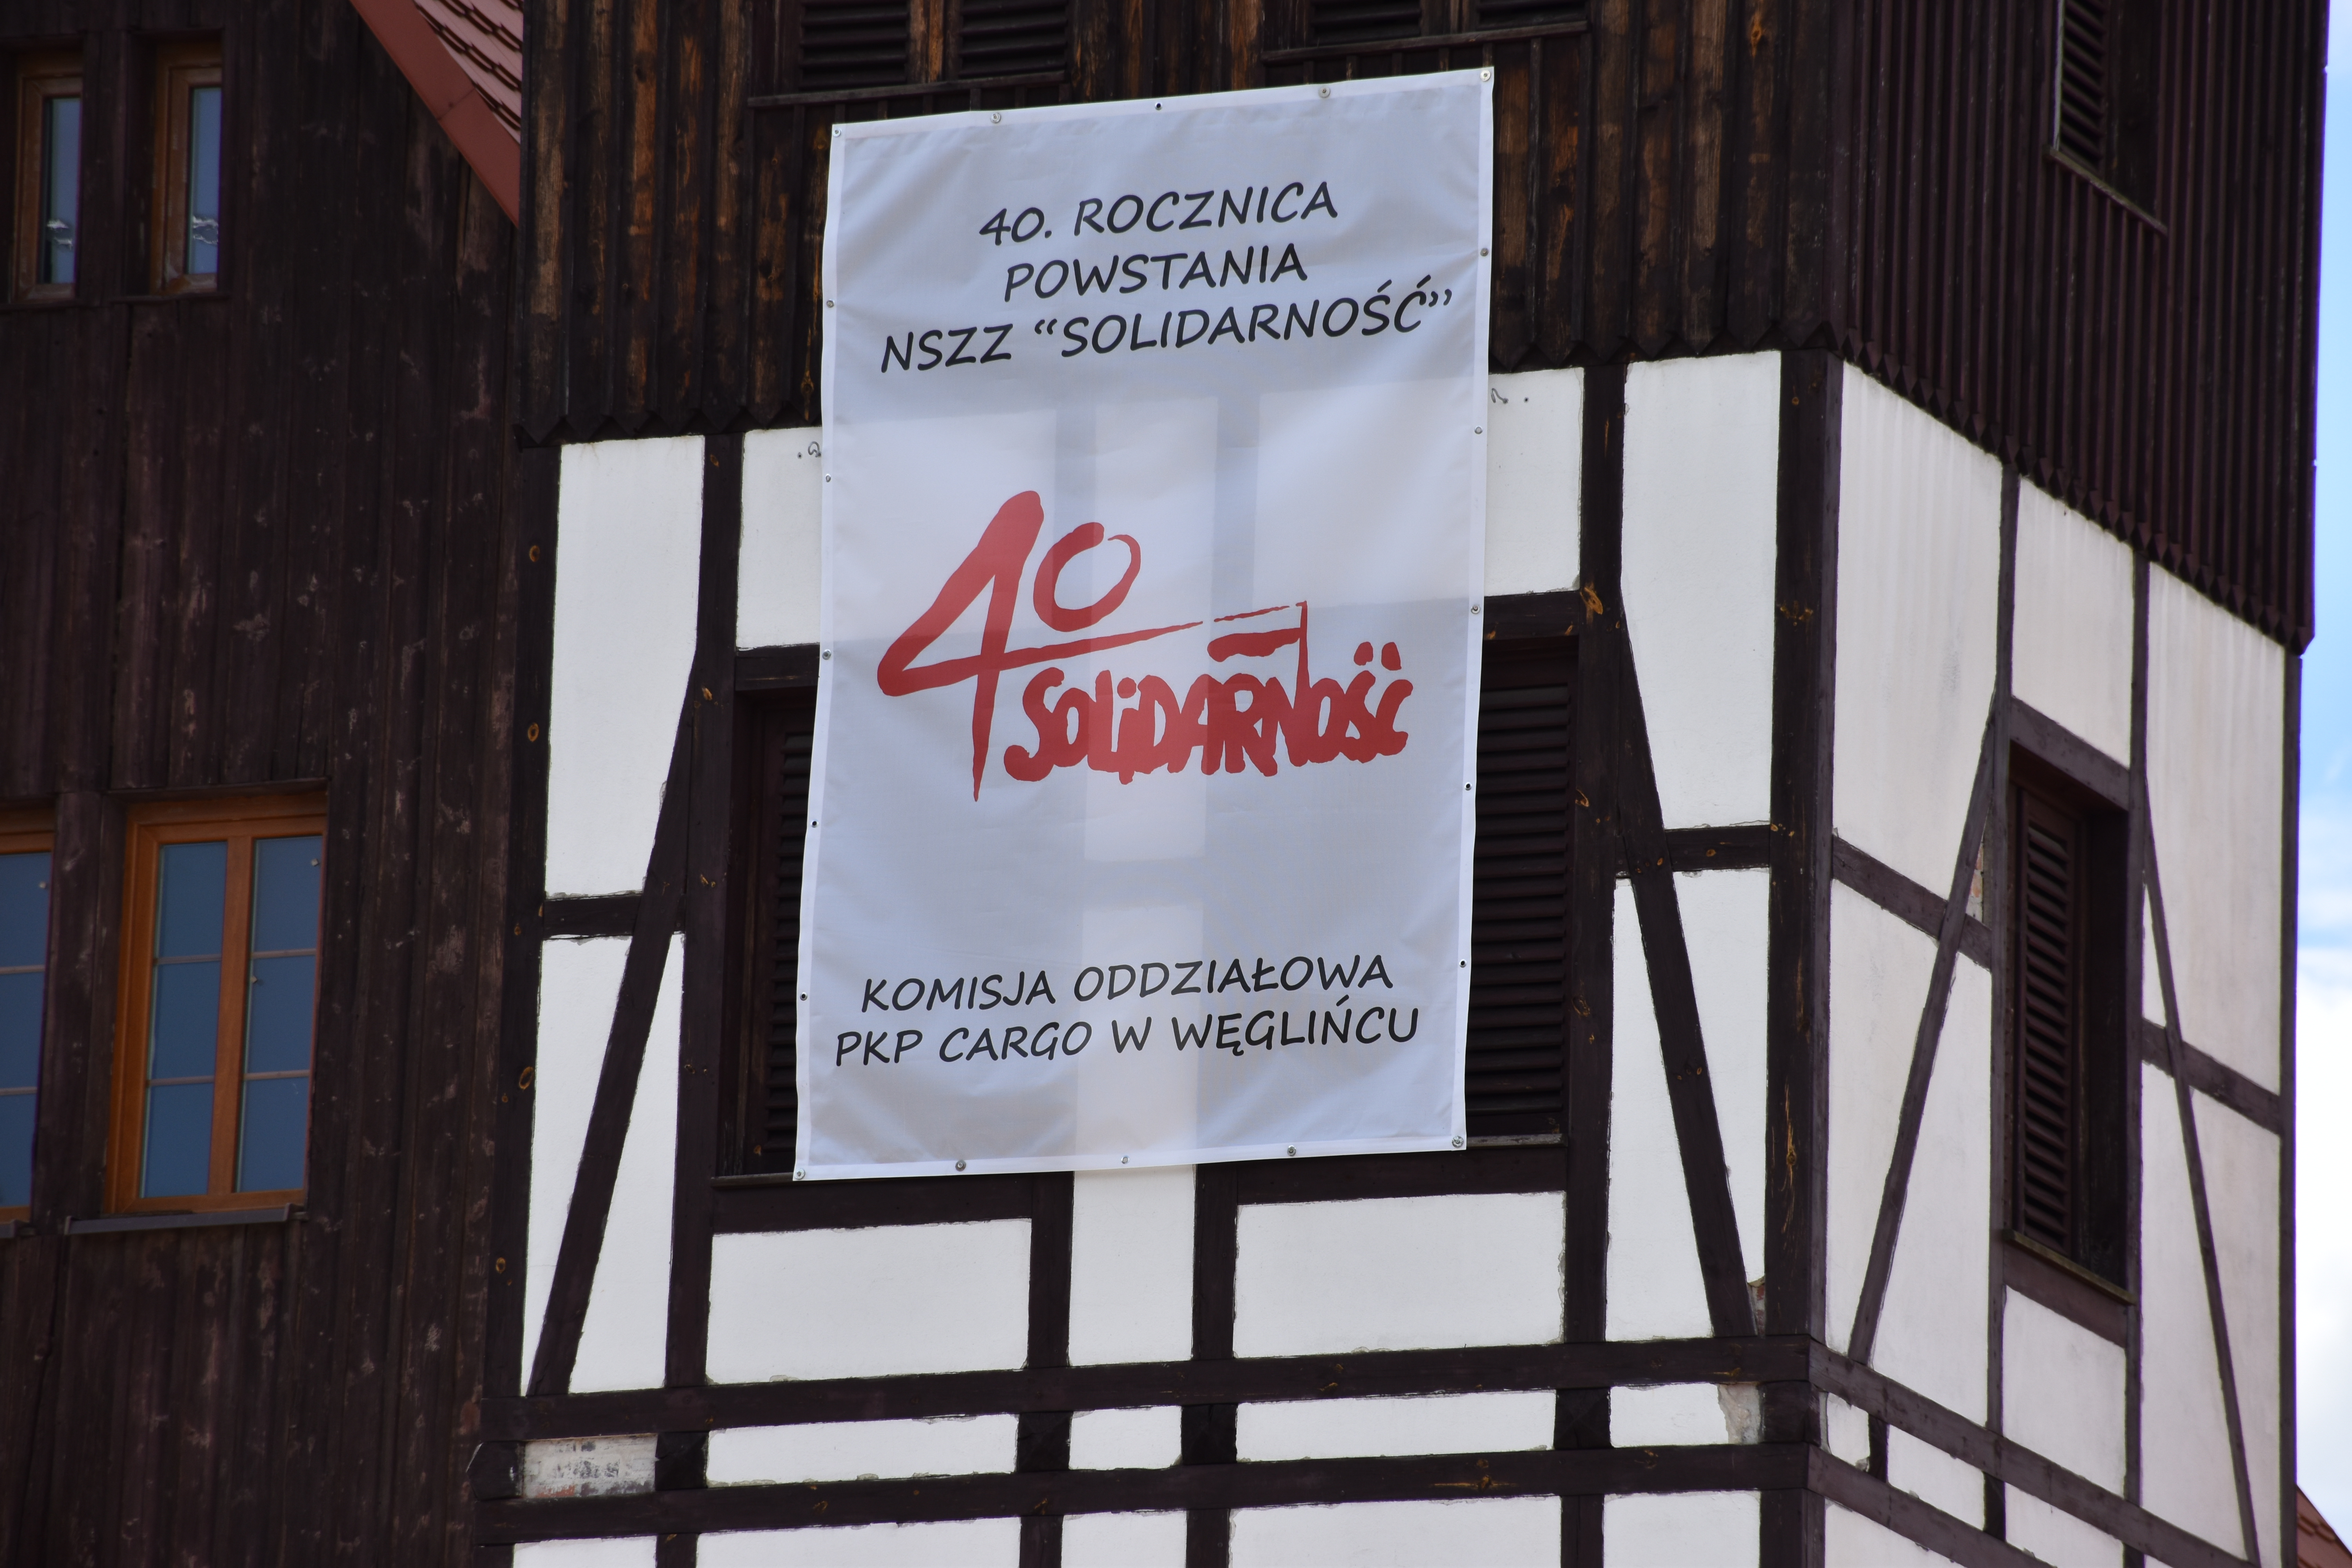 40. rocznica powstania NSZZ “Solidarność”